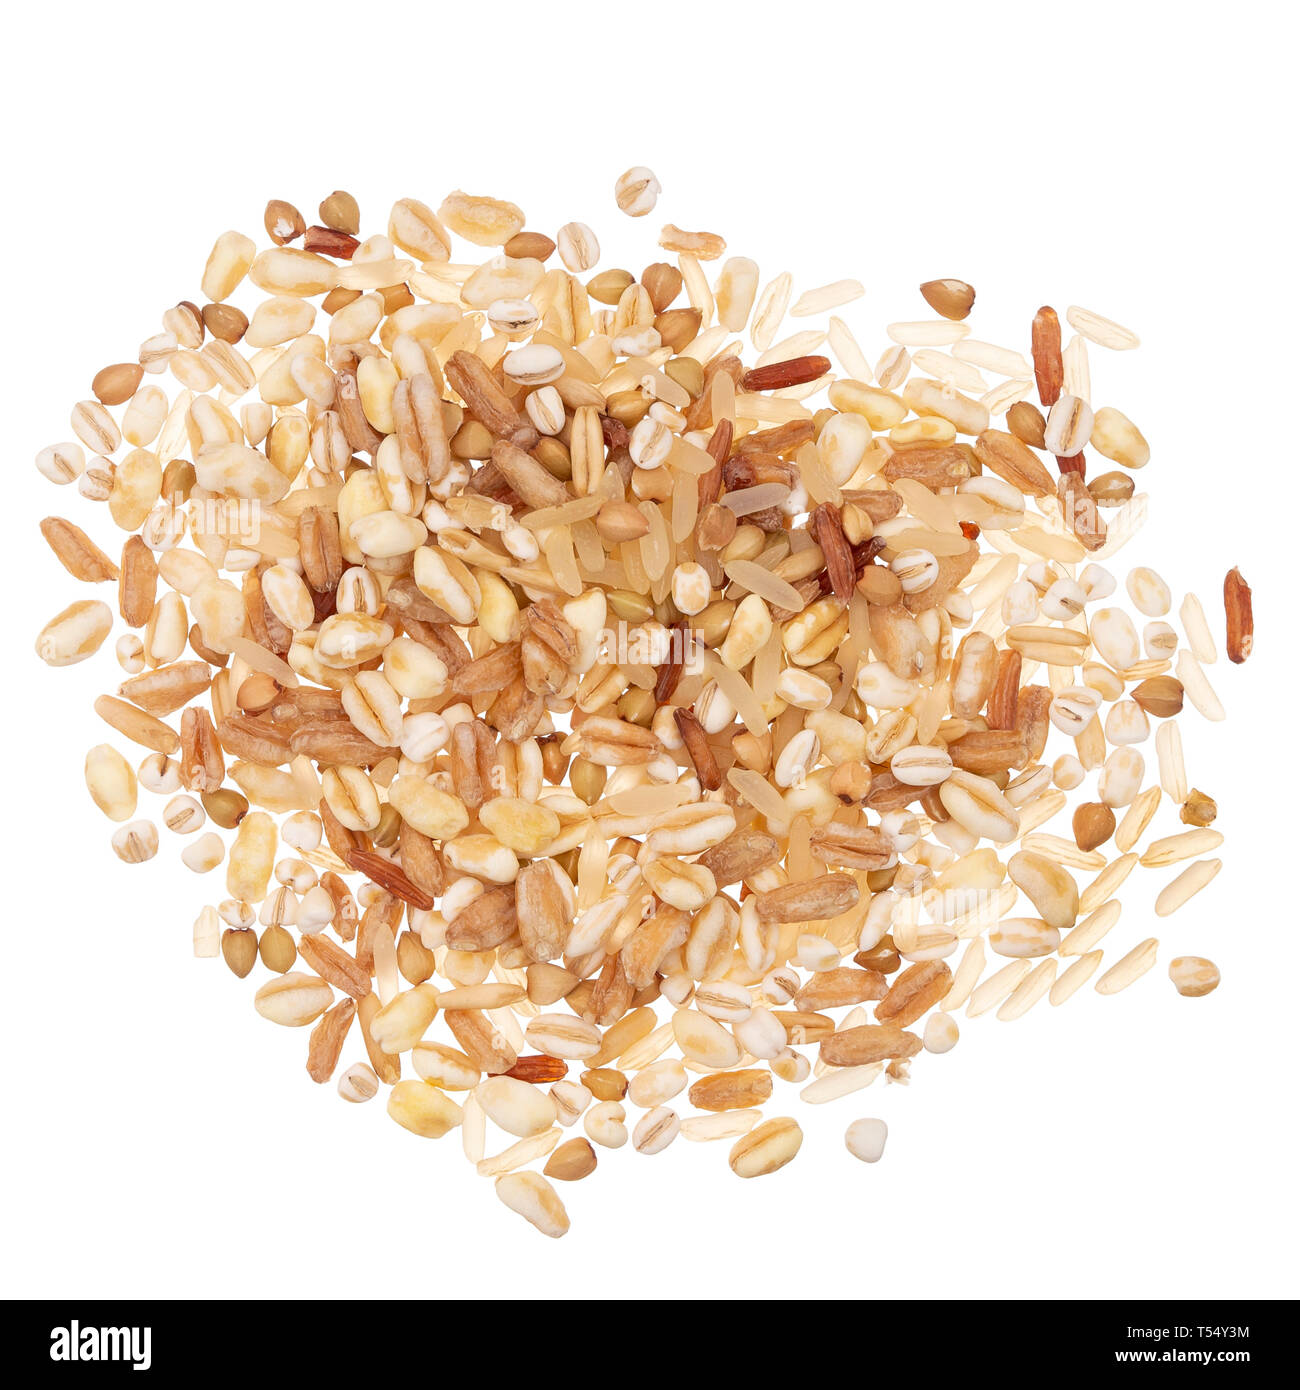 Mélange de grains multiples - barkey, le riz, le blé, l'épeautre et l'avoine, de la saine alimentation option. Isolé sur fond blanc. Banque D'Images